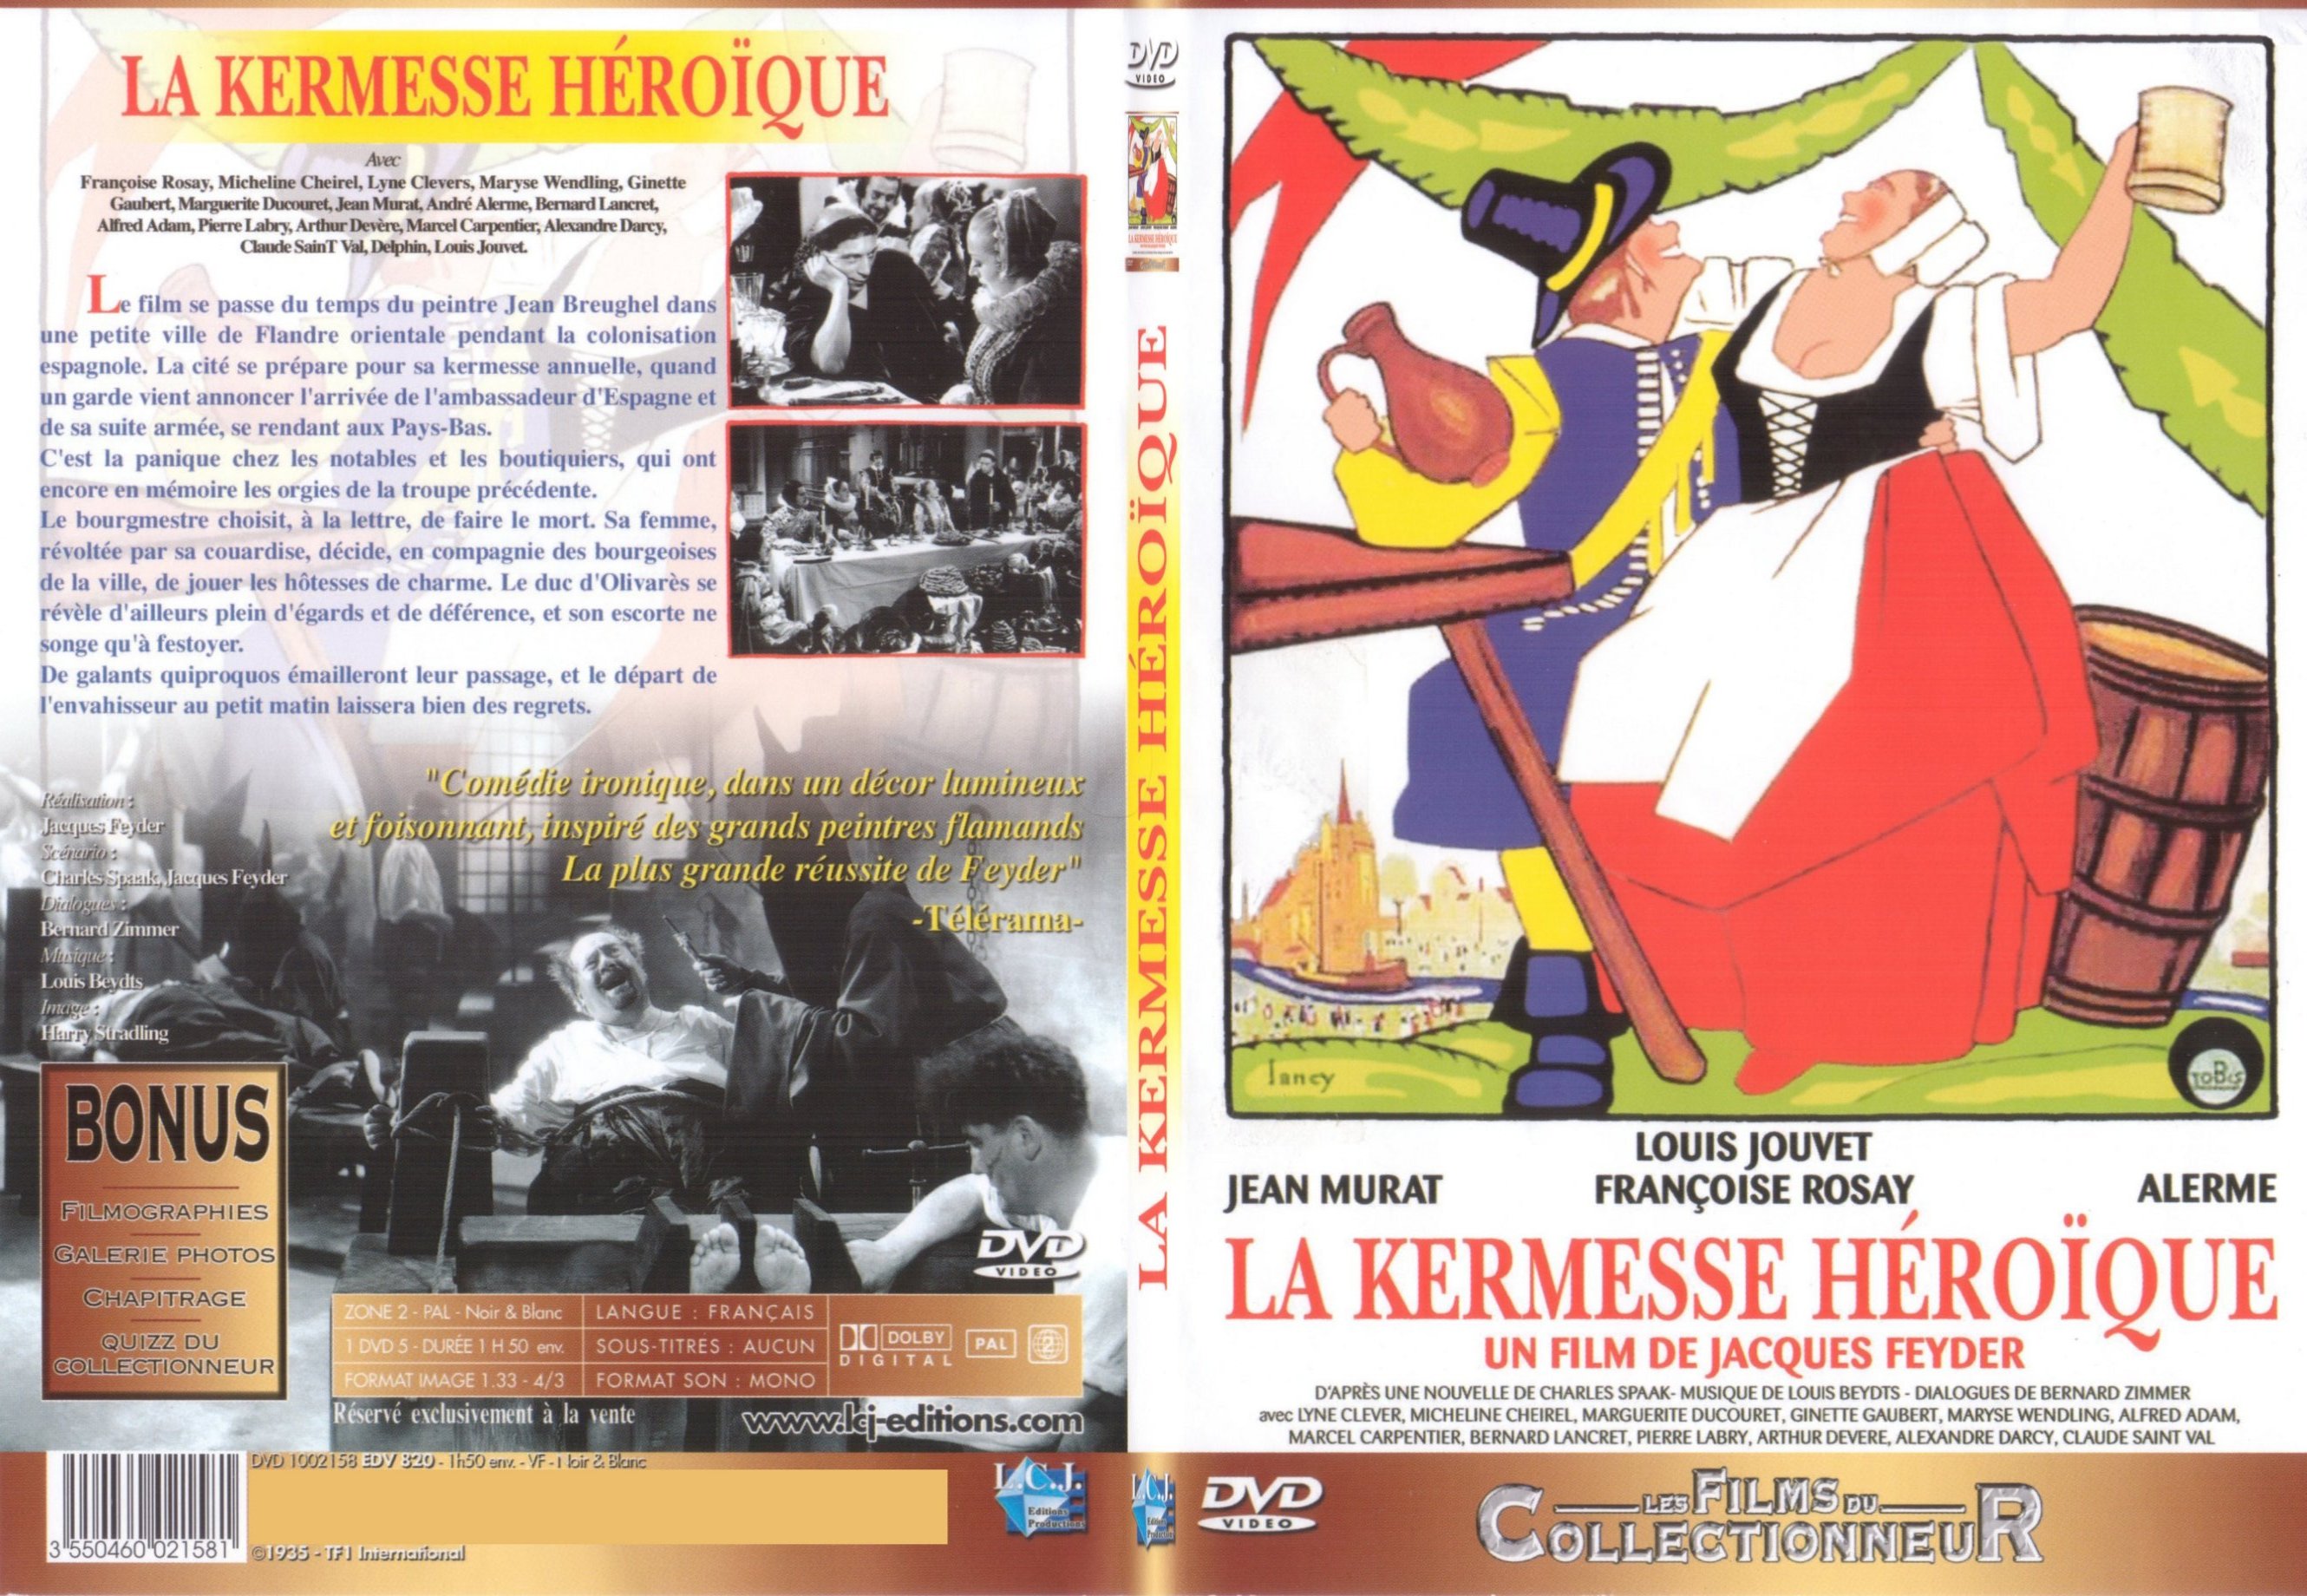 Jaquette DVD La kermesse hroique - SLIM